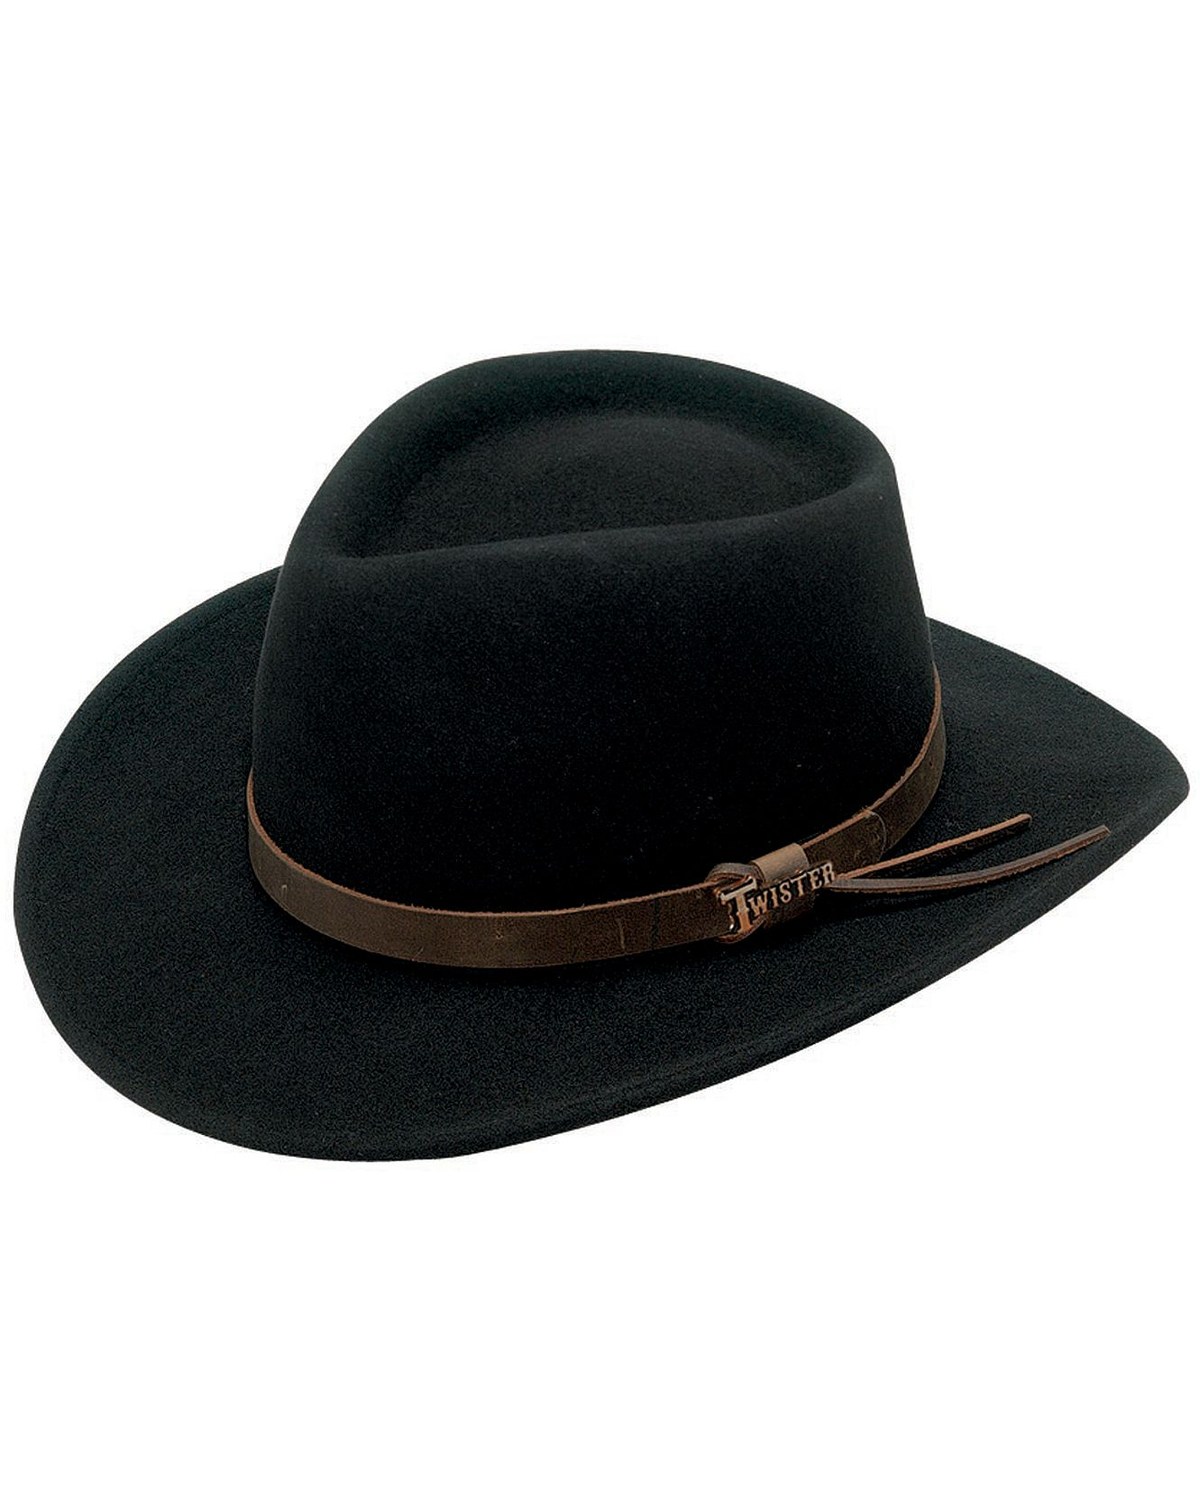 Twister Durango Crushable Felt Hat